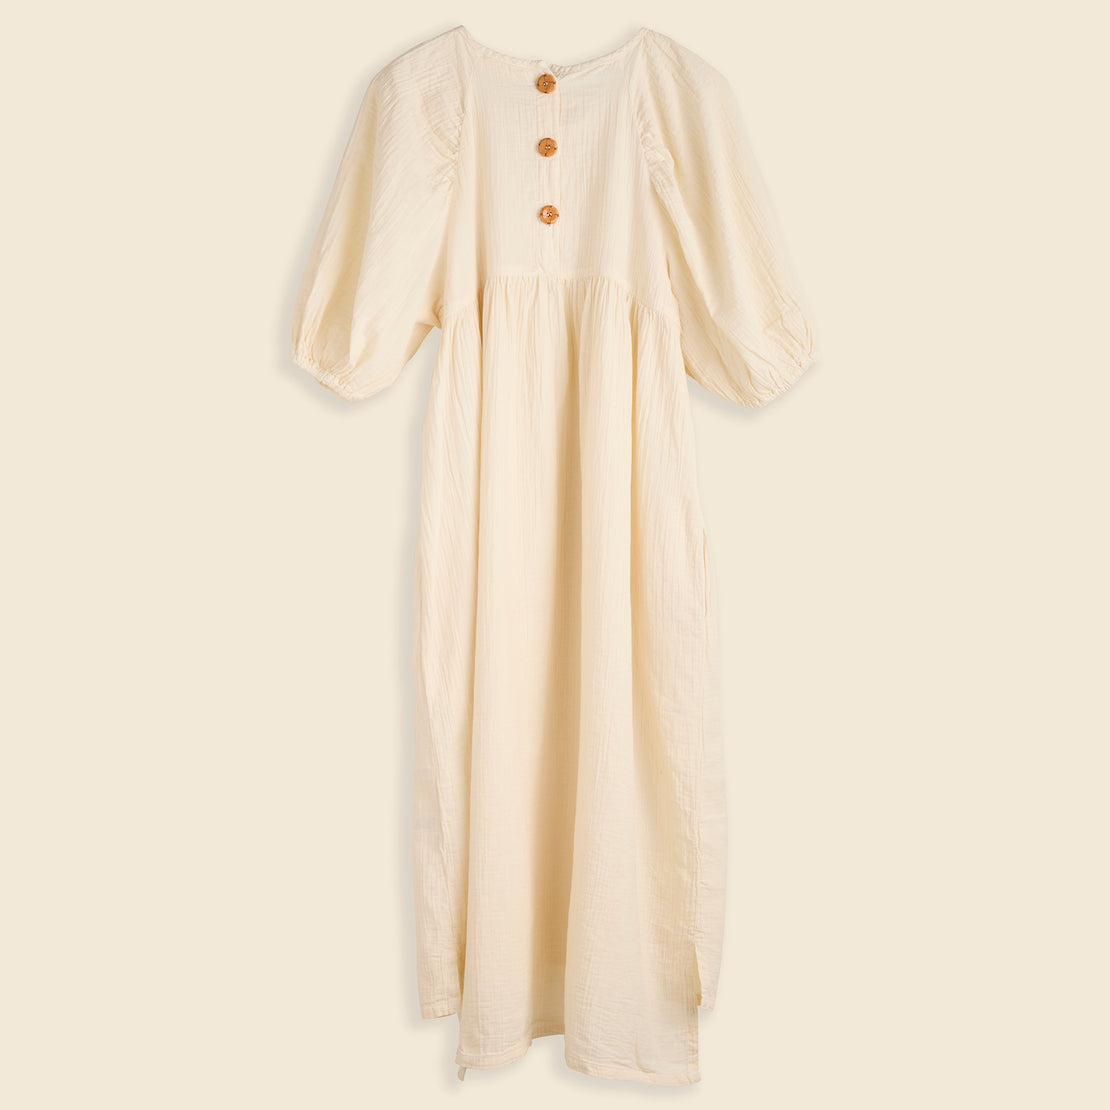 Mardi Dress - Kinari - Atelier Delphine - STAG Provisions - W - Onepiece - Dress